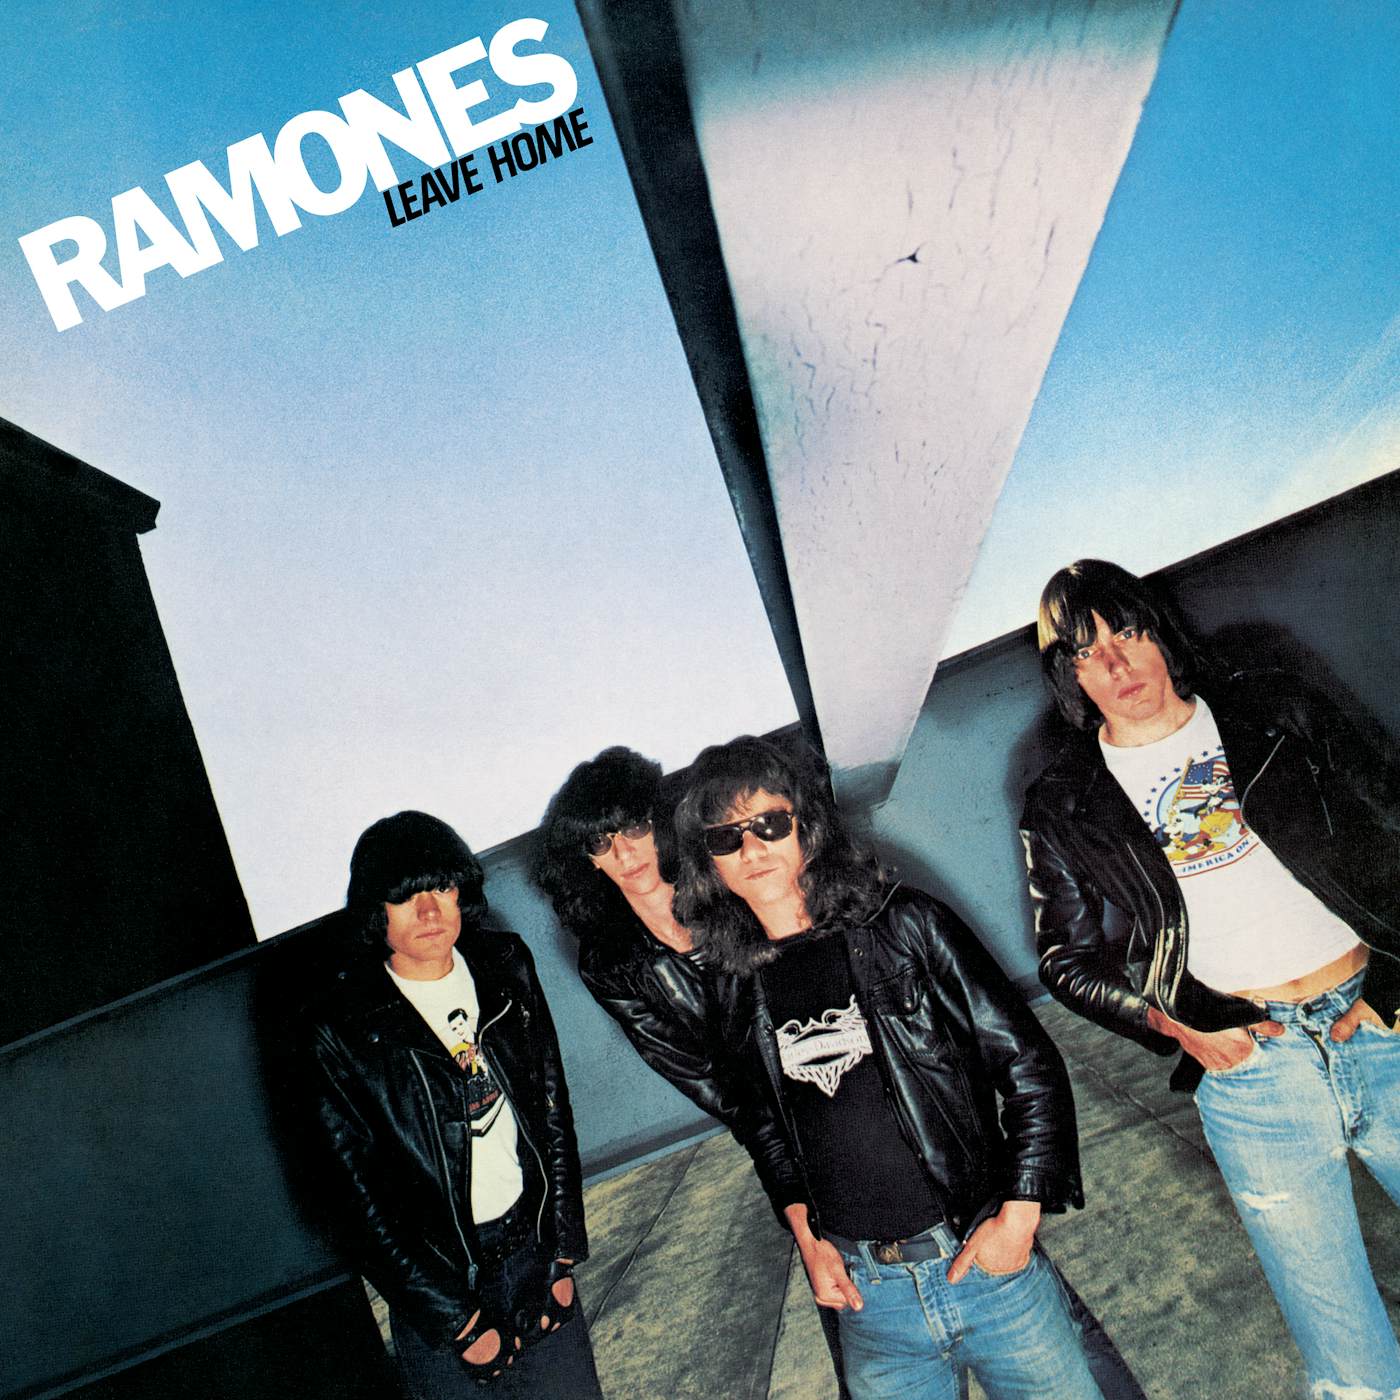 Ramones Leave Home Vinyl Record